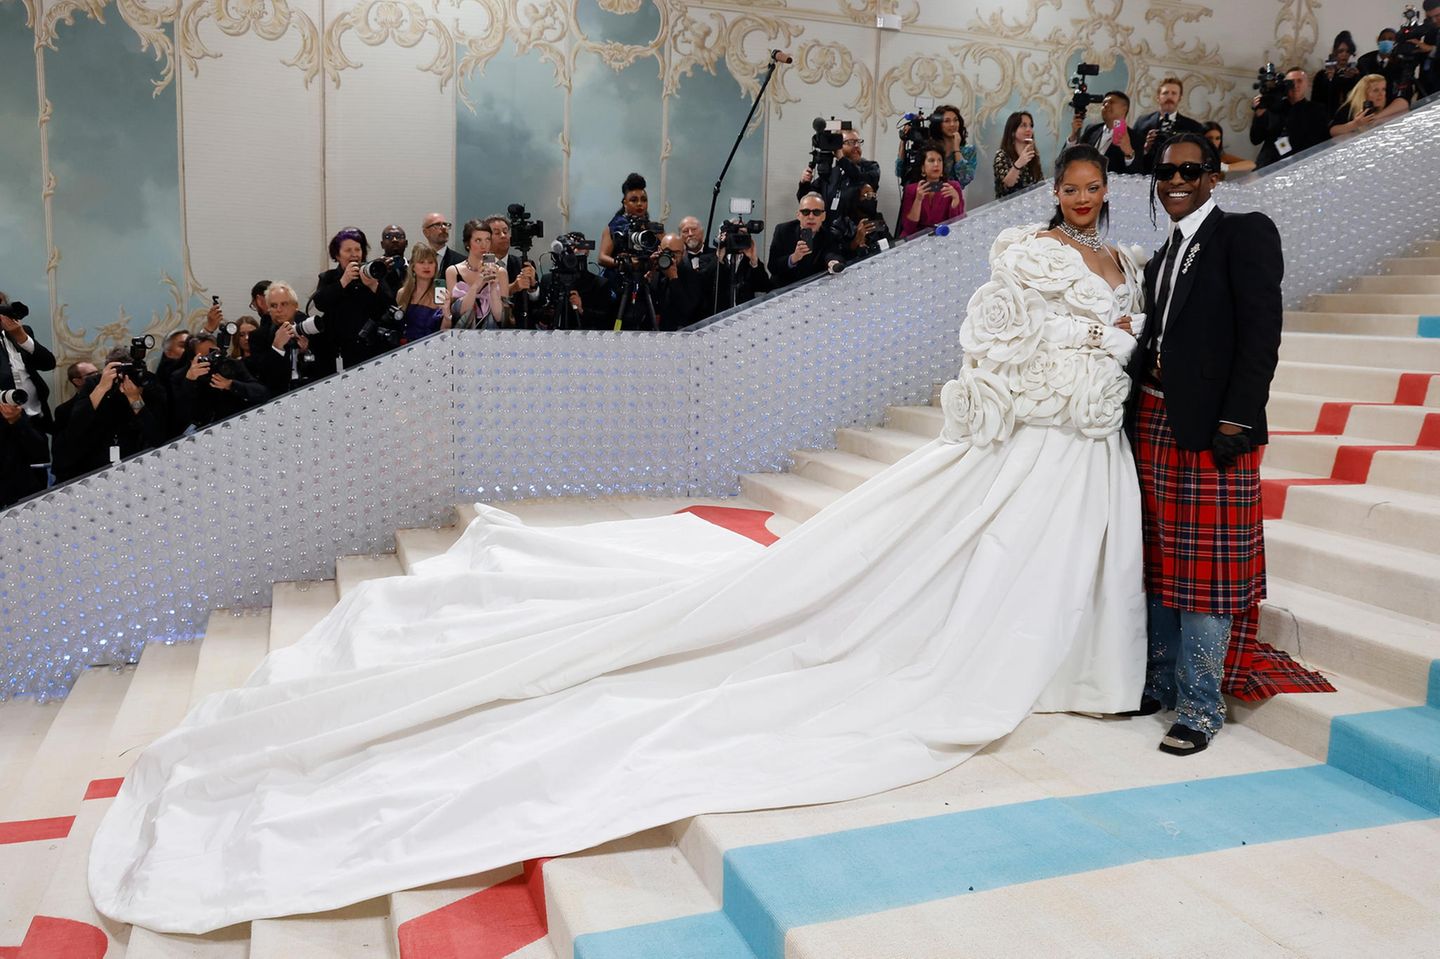 En guise de couronnement, Rihanna et Asap Rocky assurent à nouveau le moment wow de la soirée.  La chanteuse enceinte apparaît sur le tapis rouge dans une robe blanche avec une traîne XXL et une veste élaborée avec des applications de fleurs de la Maison Valentino.  Asap mise sur un mix sauvage de jupe tartan, jean et veste signé Gucci.